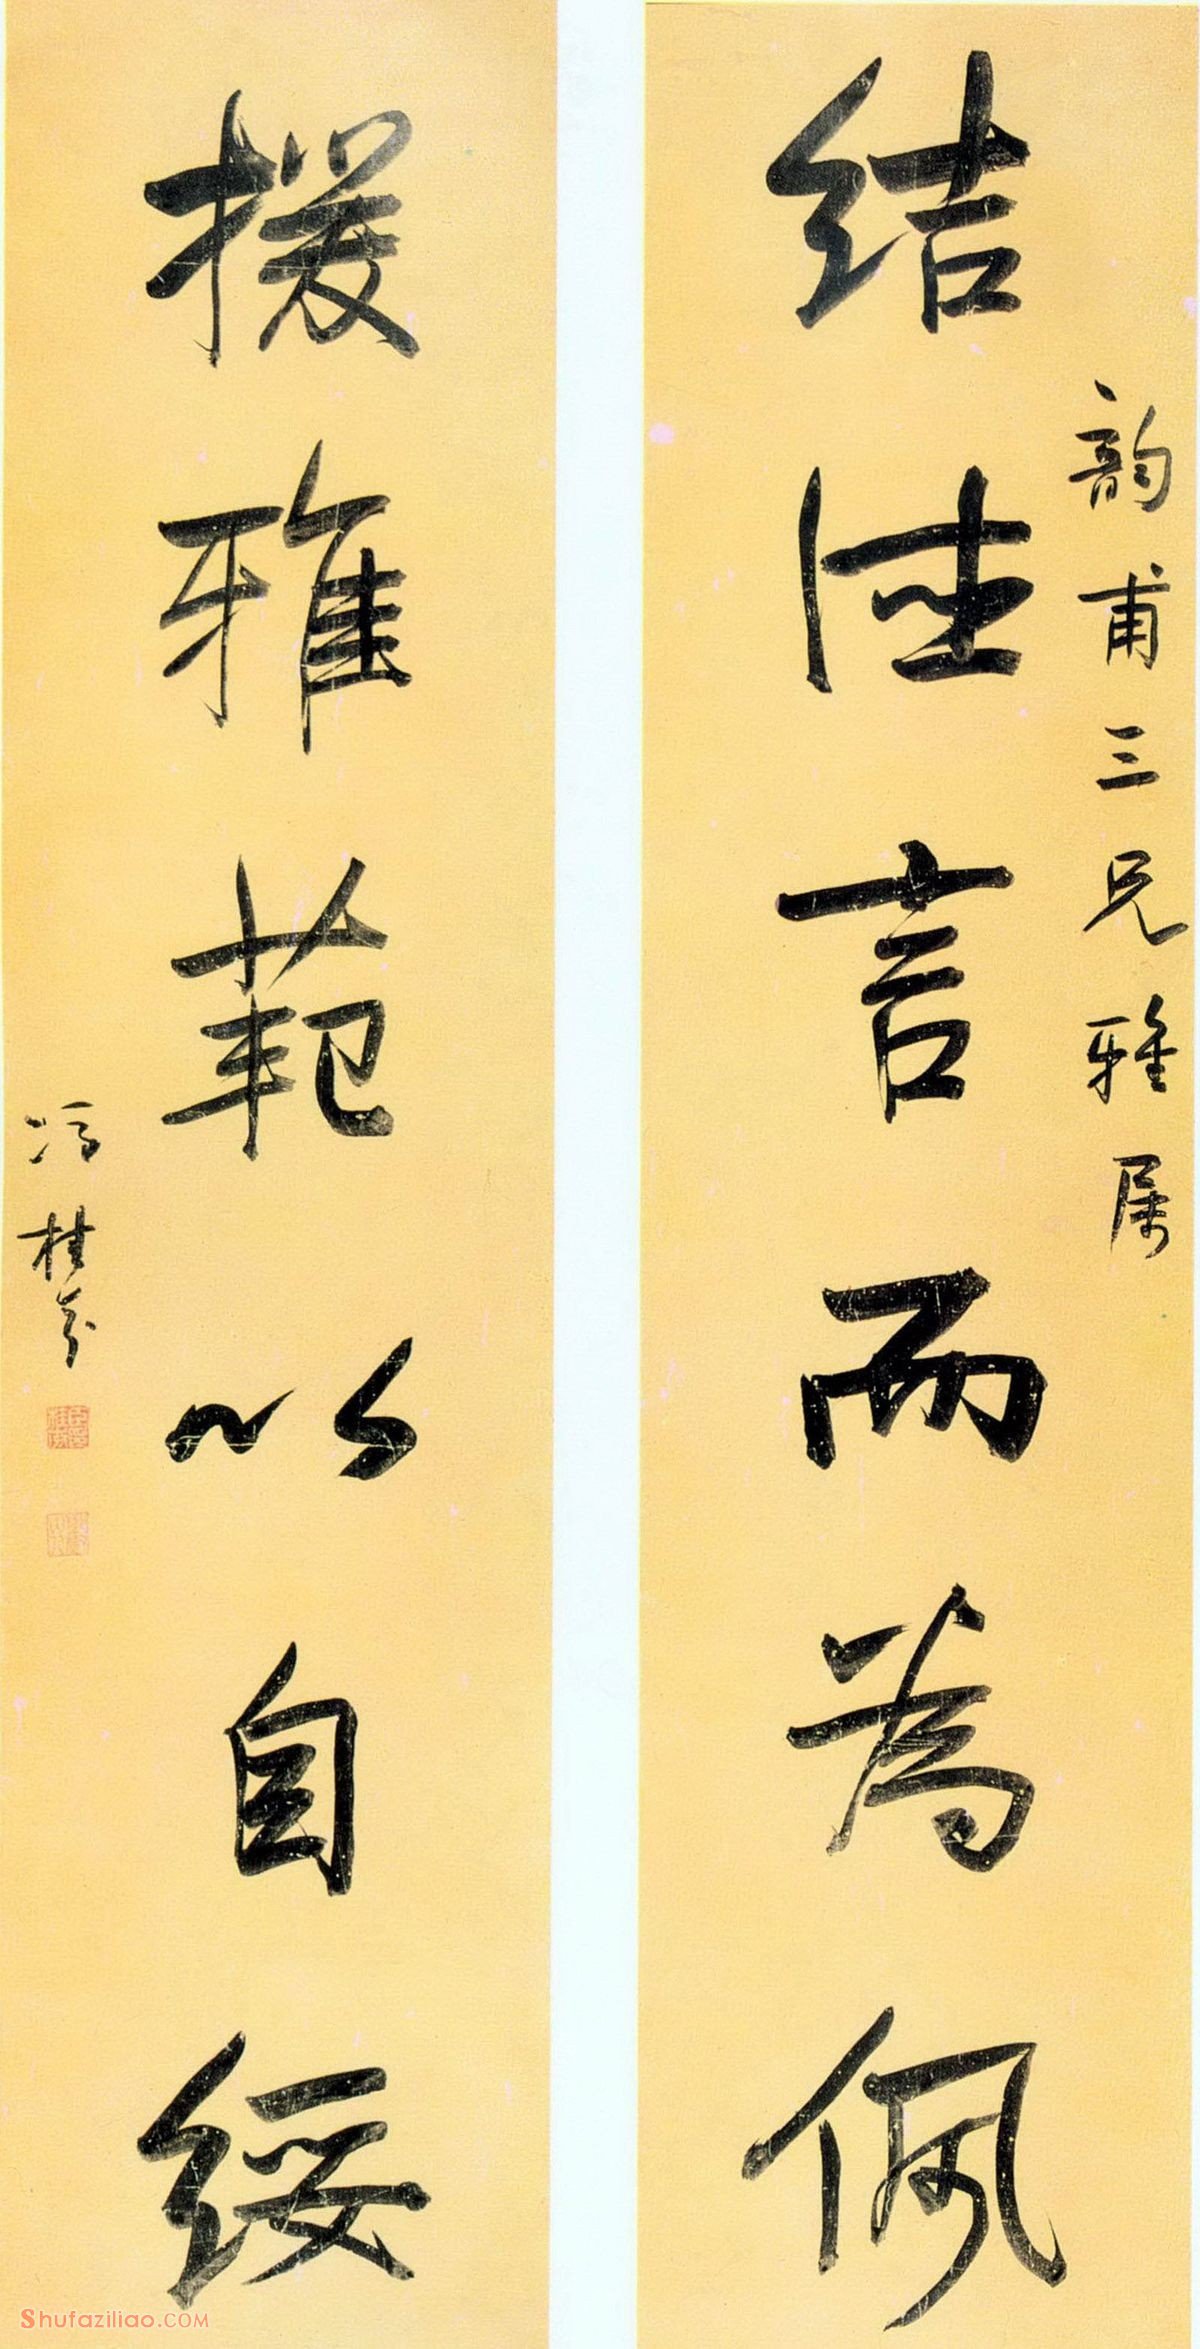 冯桂芬《六言联》，行书。选自《中国美术全集》。